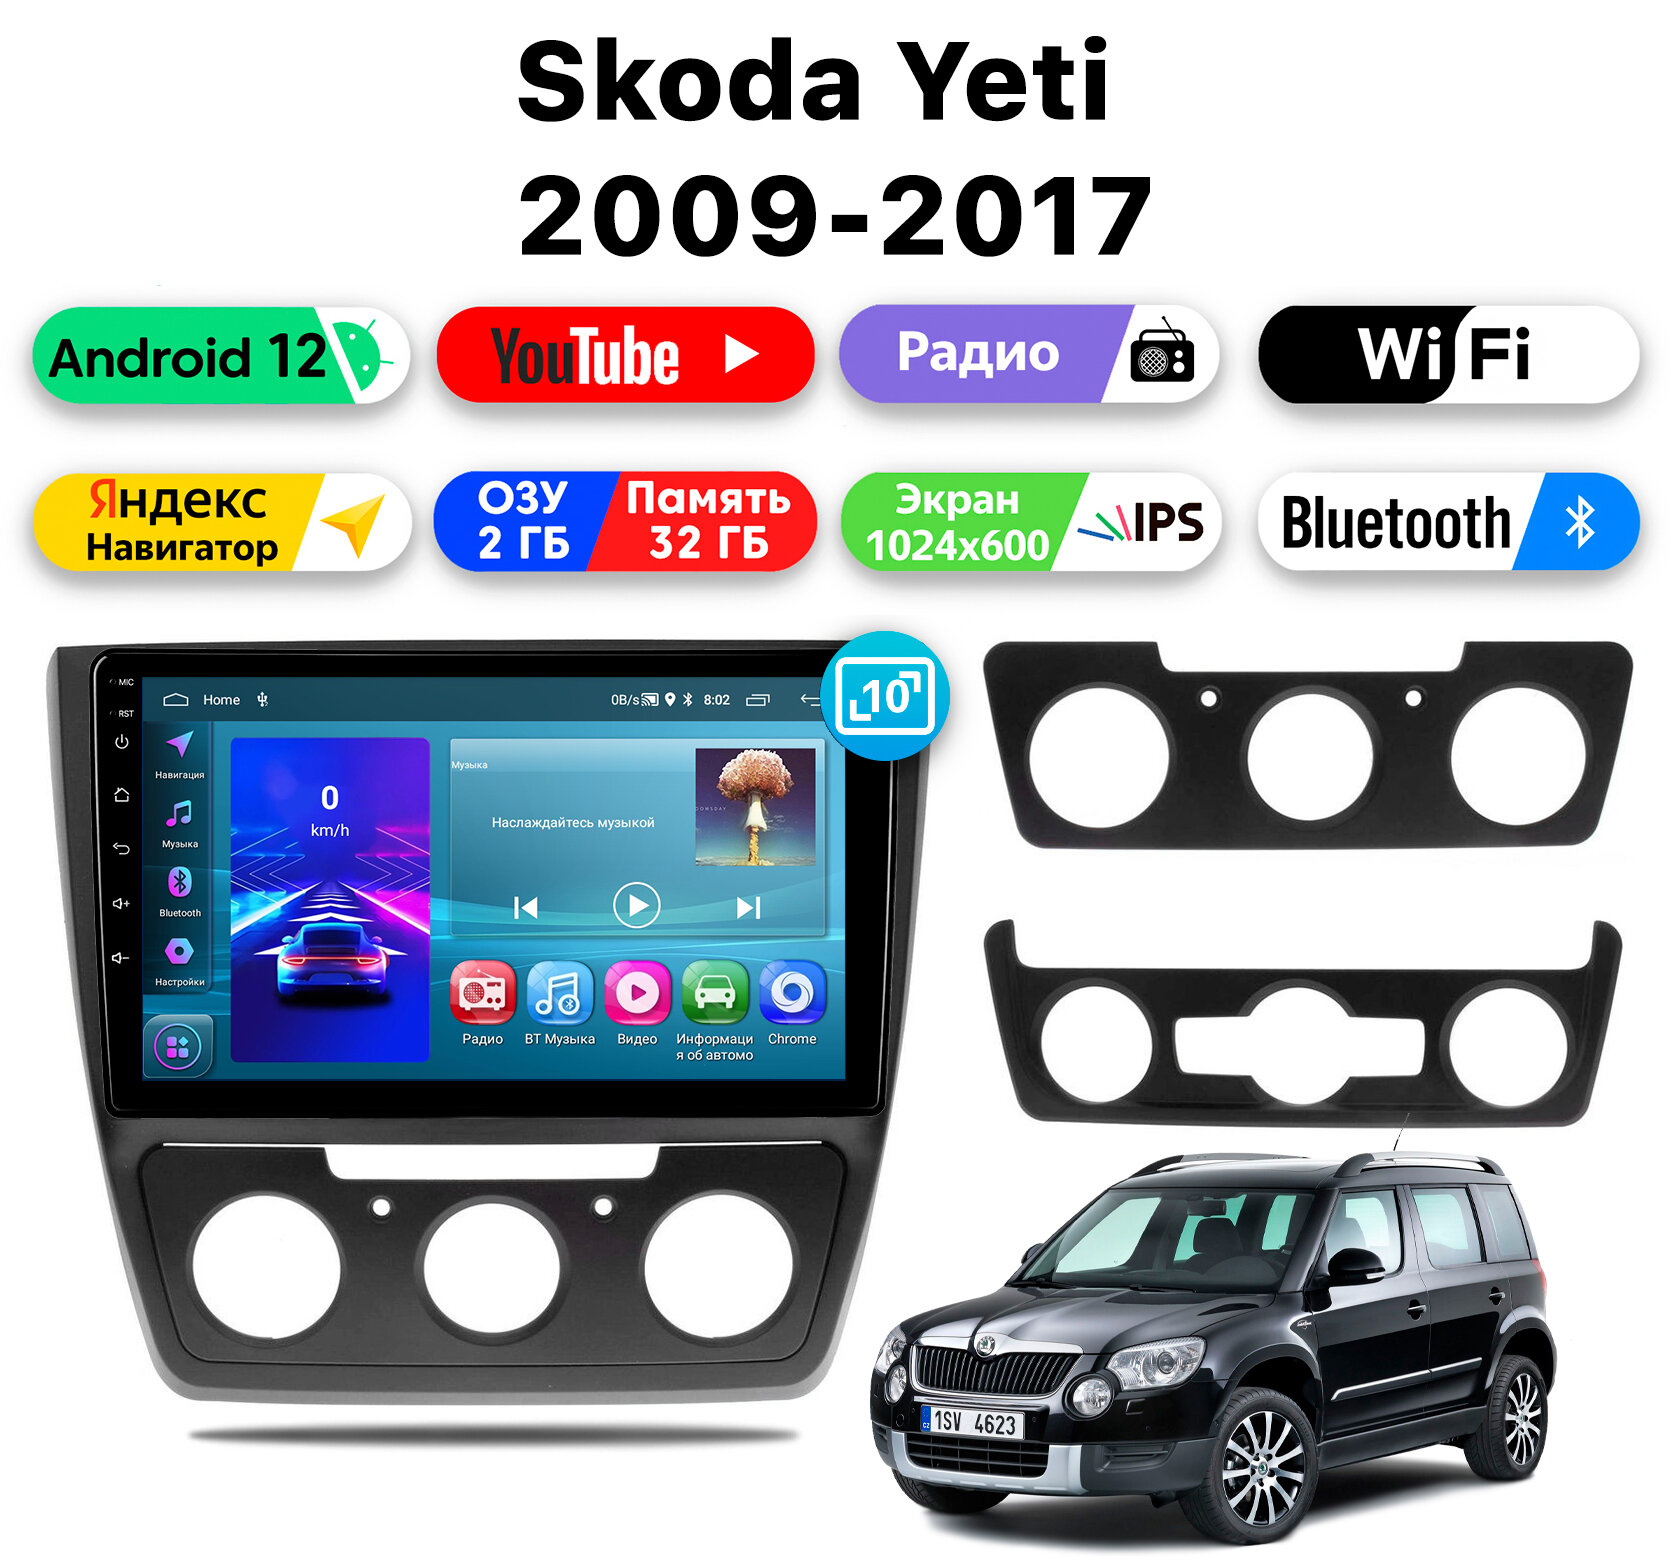 Автомагнитола для SKODA Yeti (2009-2017), Android 12, 2/32 Gb, Wi-Fi, Bluetooth, Hands Free, разделение экрана, поддержка кнопок на руле